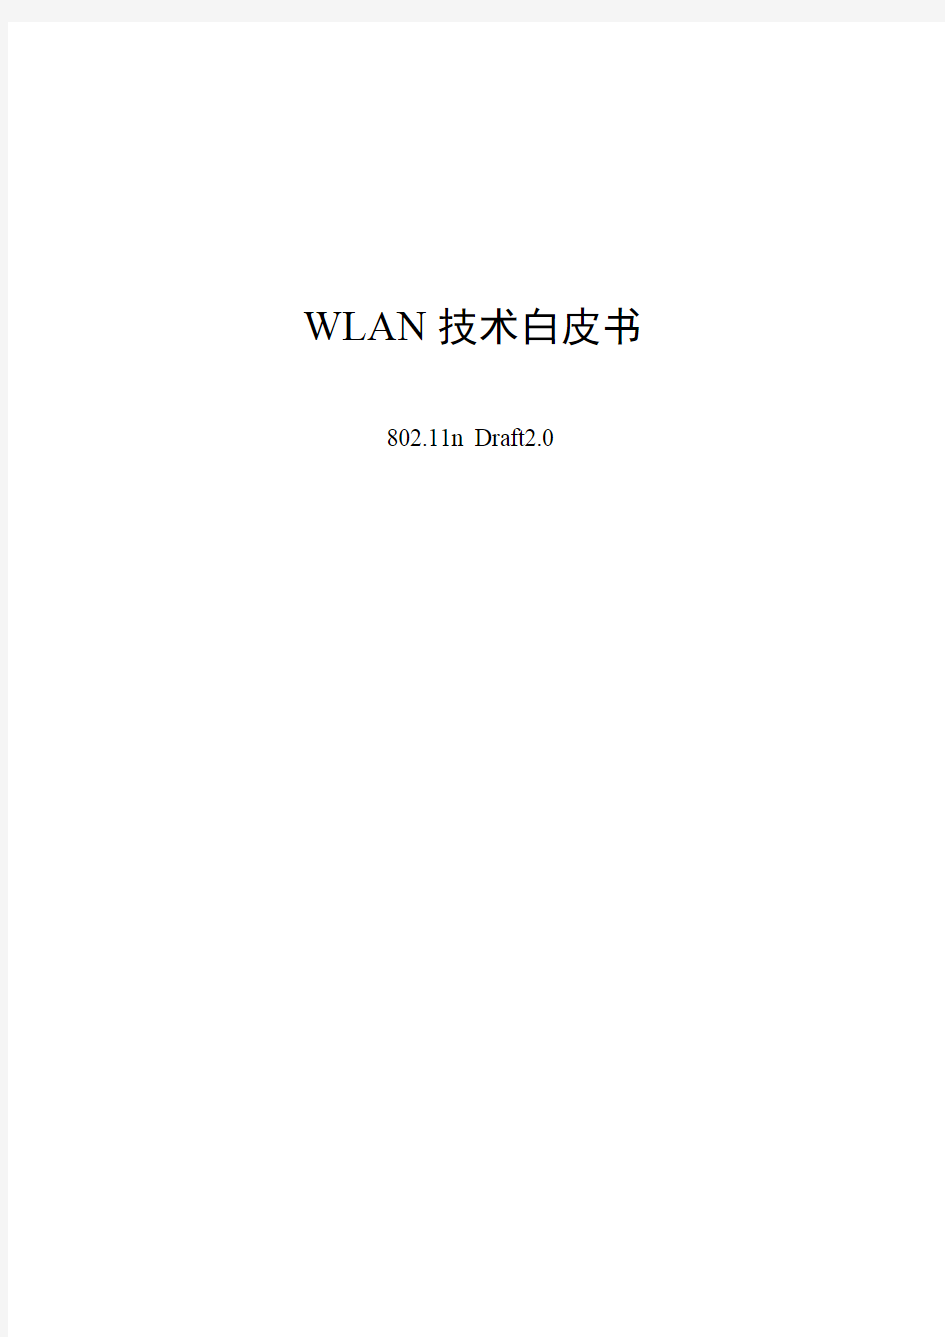 WLAN技术白皮书-802.11n D2.0